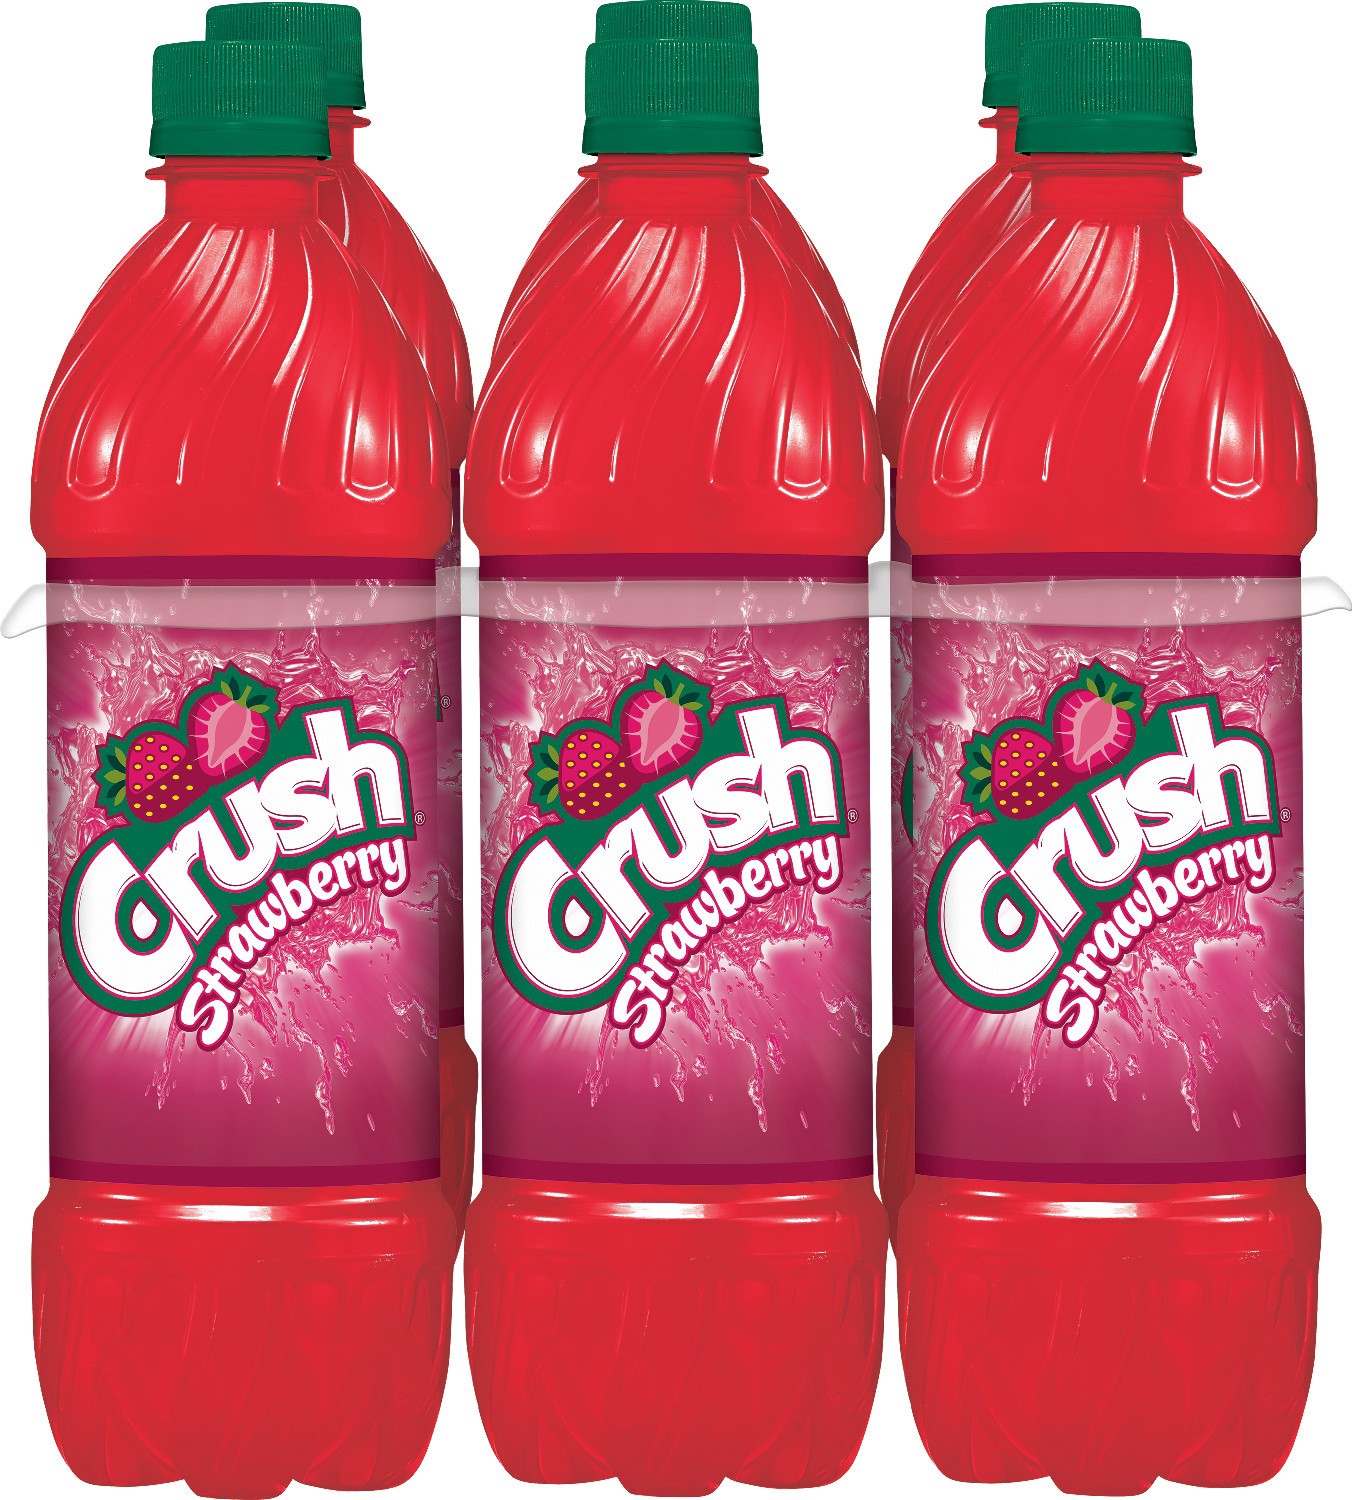 slide 1 of 4, Crush Strawberry Soda, .5 L bottles, 6 pack, 6 ct; 16.9 fl oz